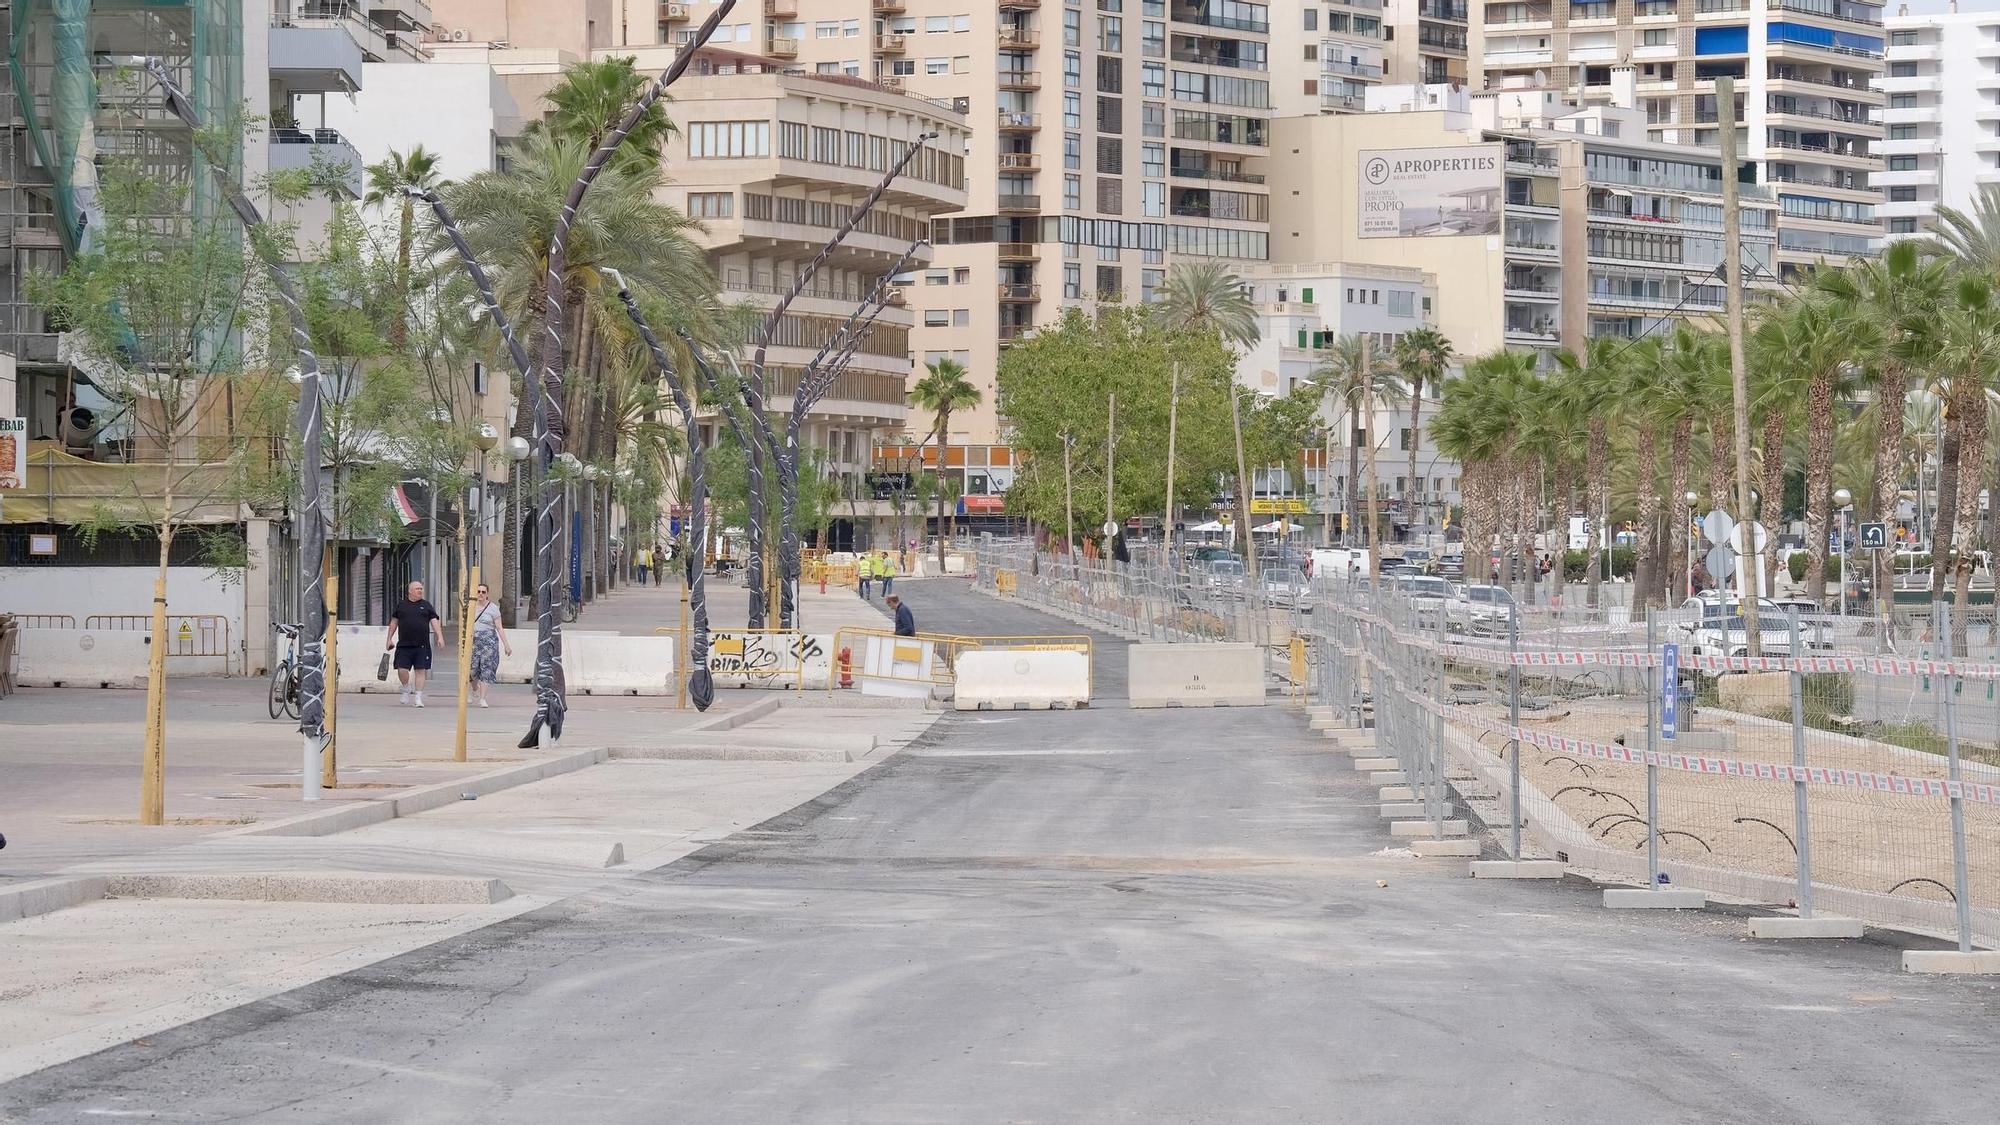 FOTOS: Así van las obras en el Paseo Marítimo de Palma 14 meses después